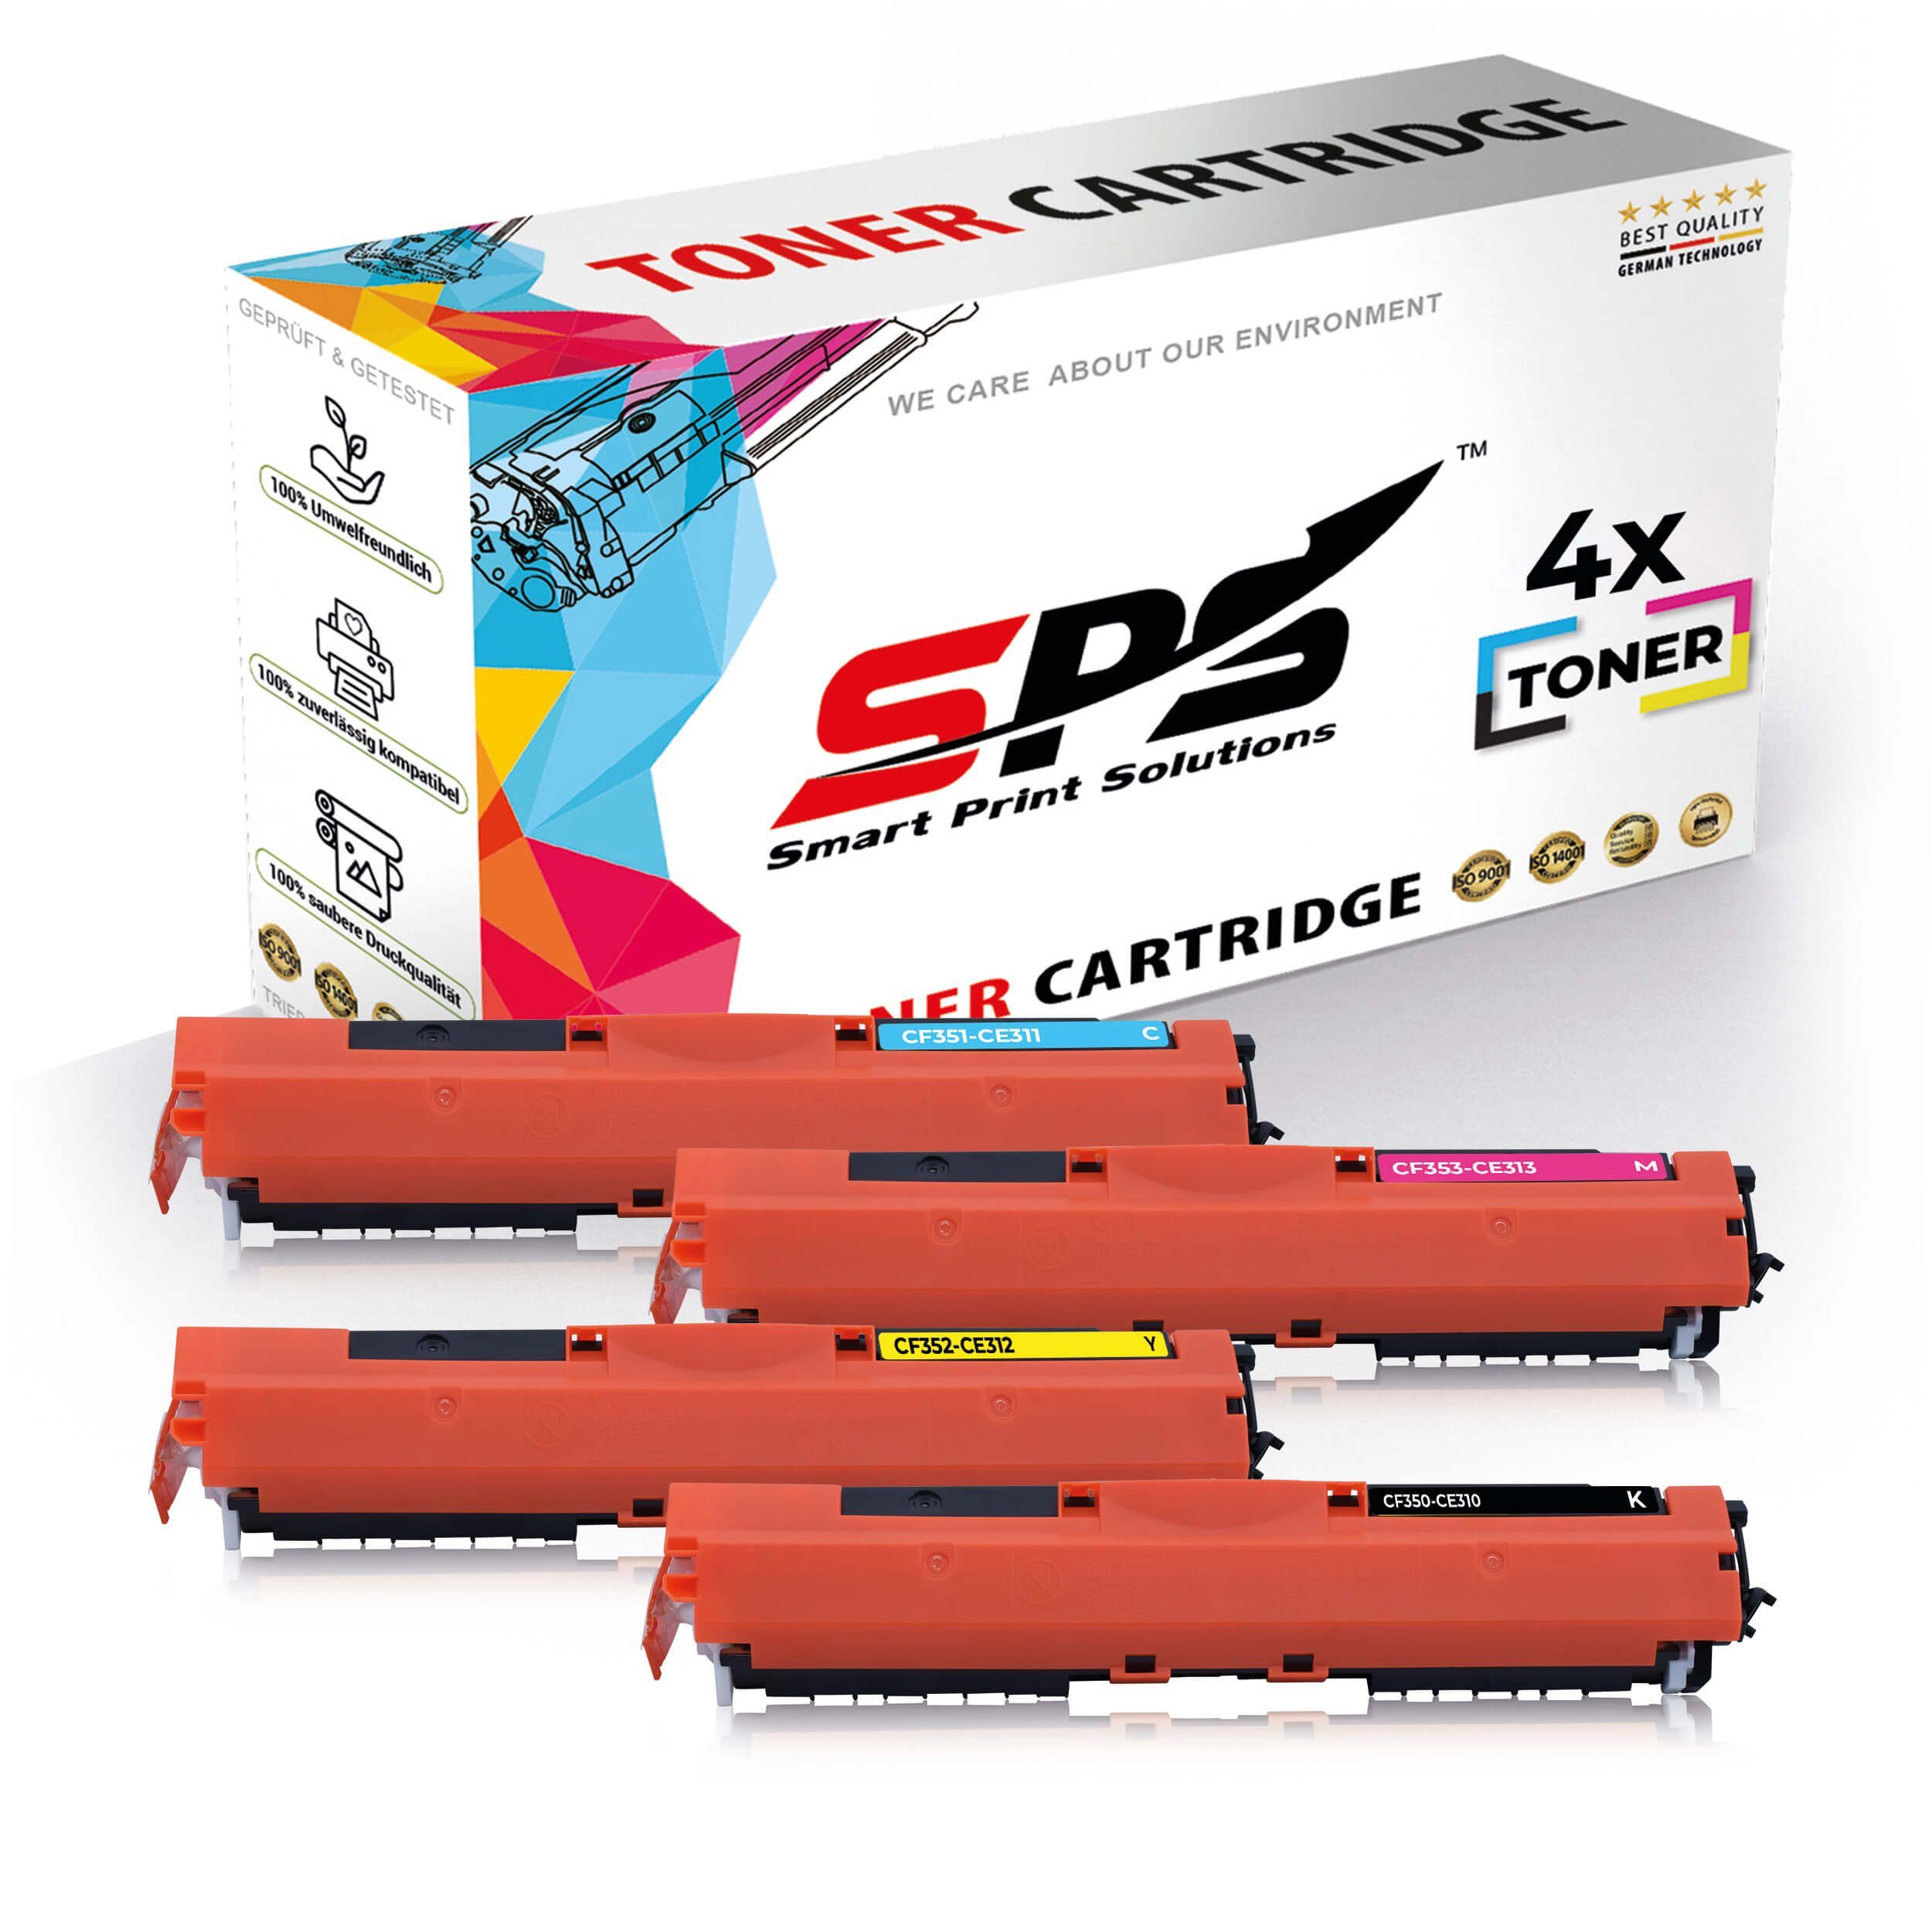 SPS Tonerkartusche 4x Multipack Set Kompatibel für HP LaserJet Pro, (4er Pack, 4x Toner)